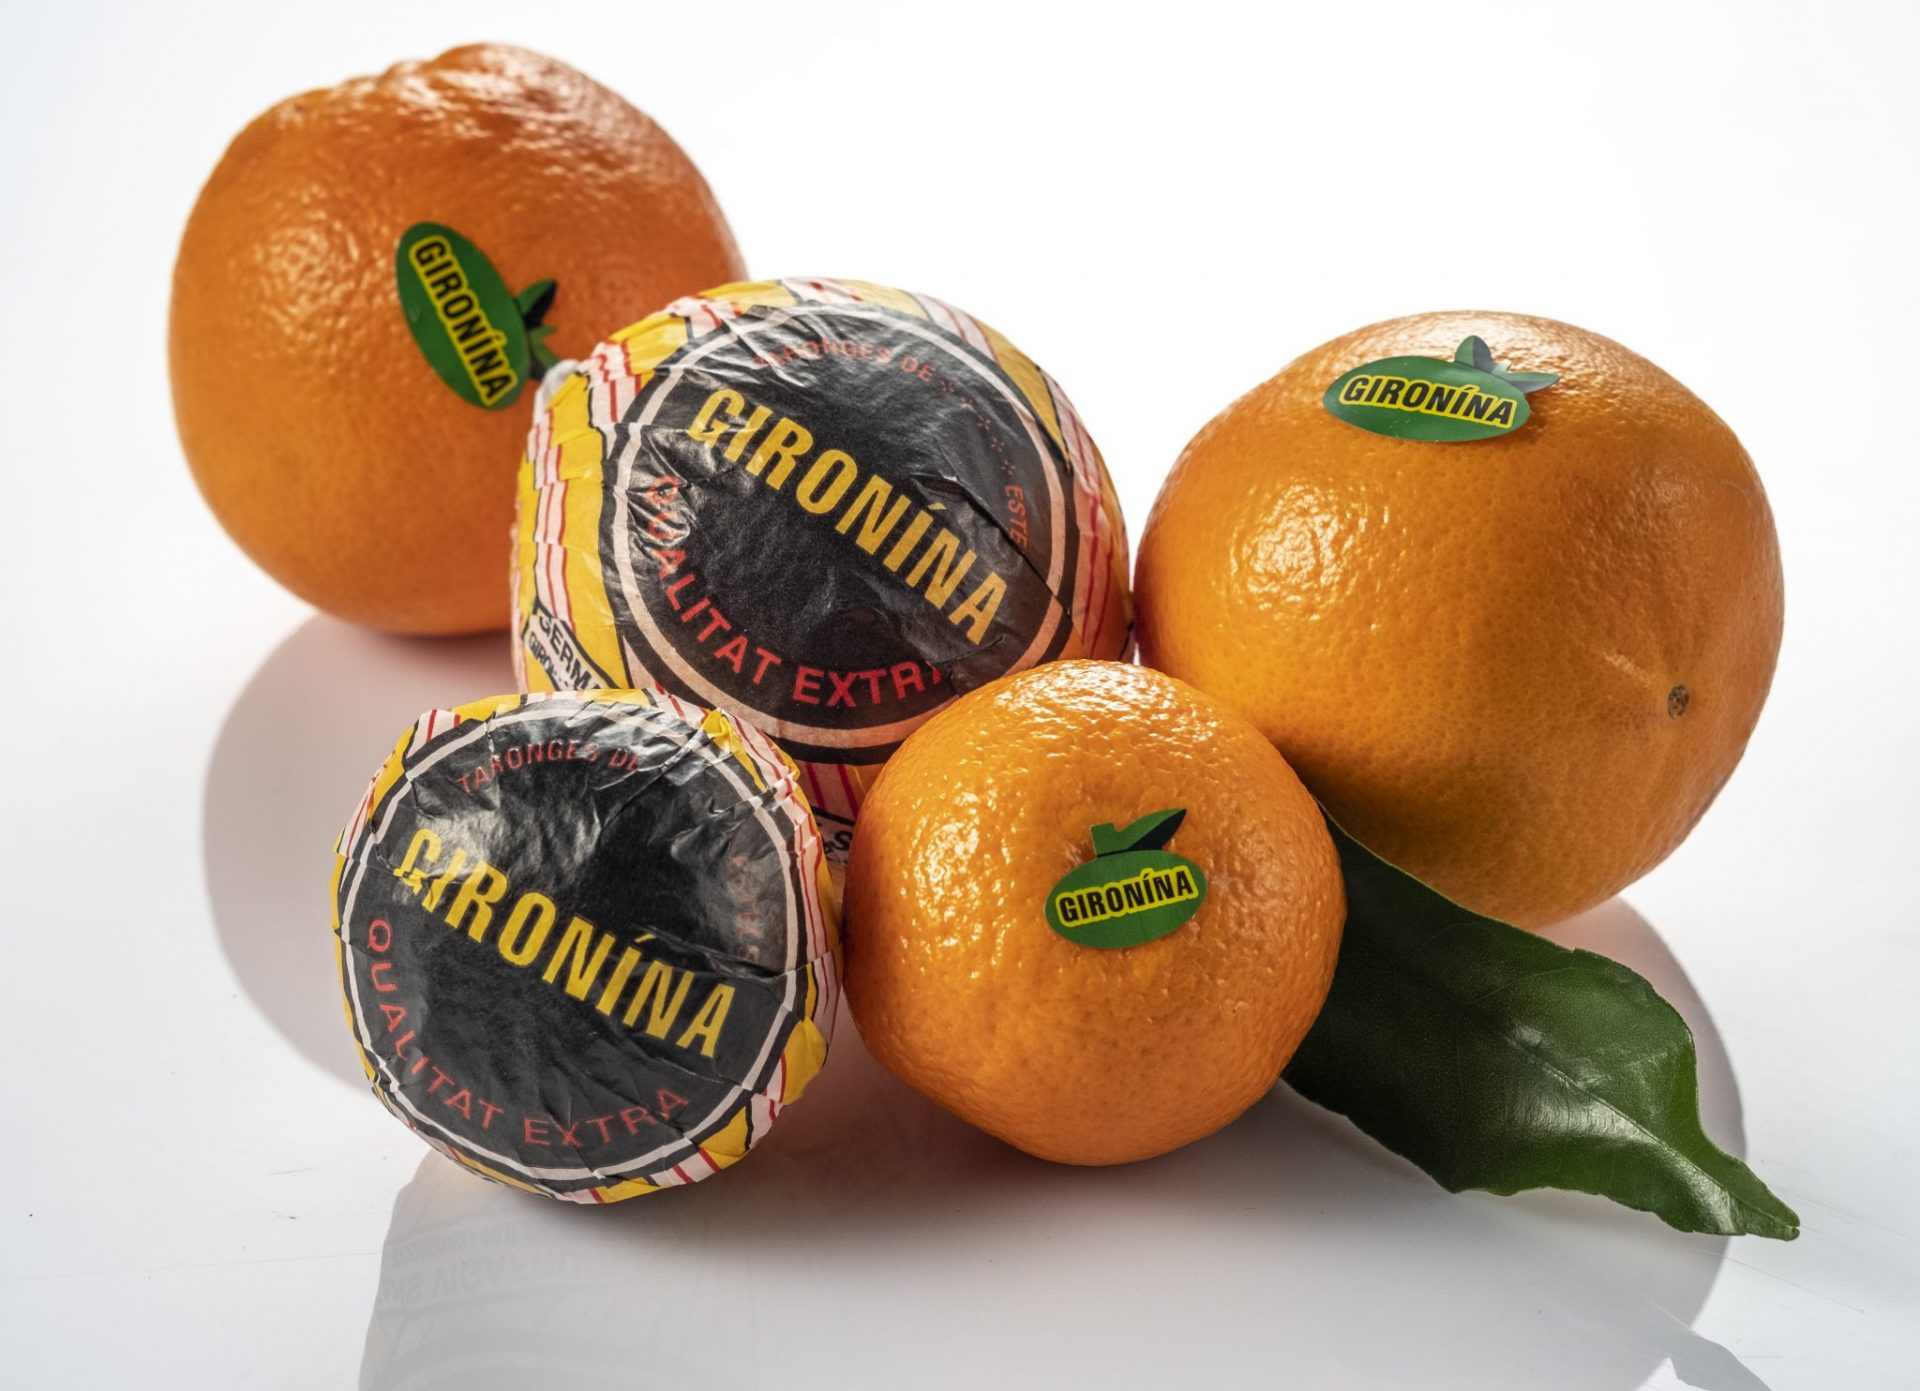 naranja gironina